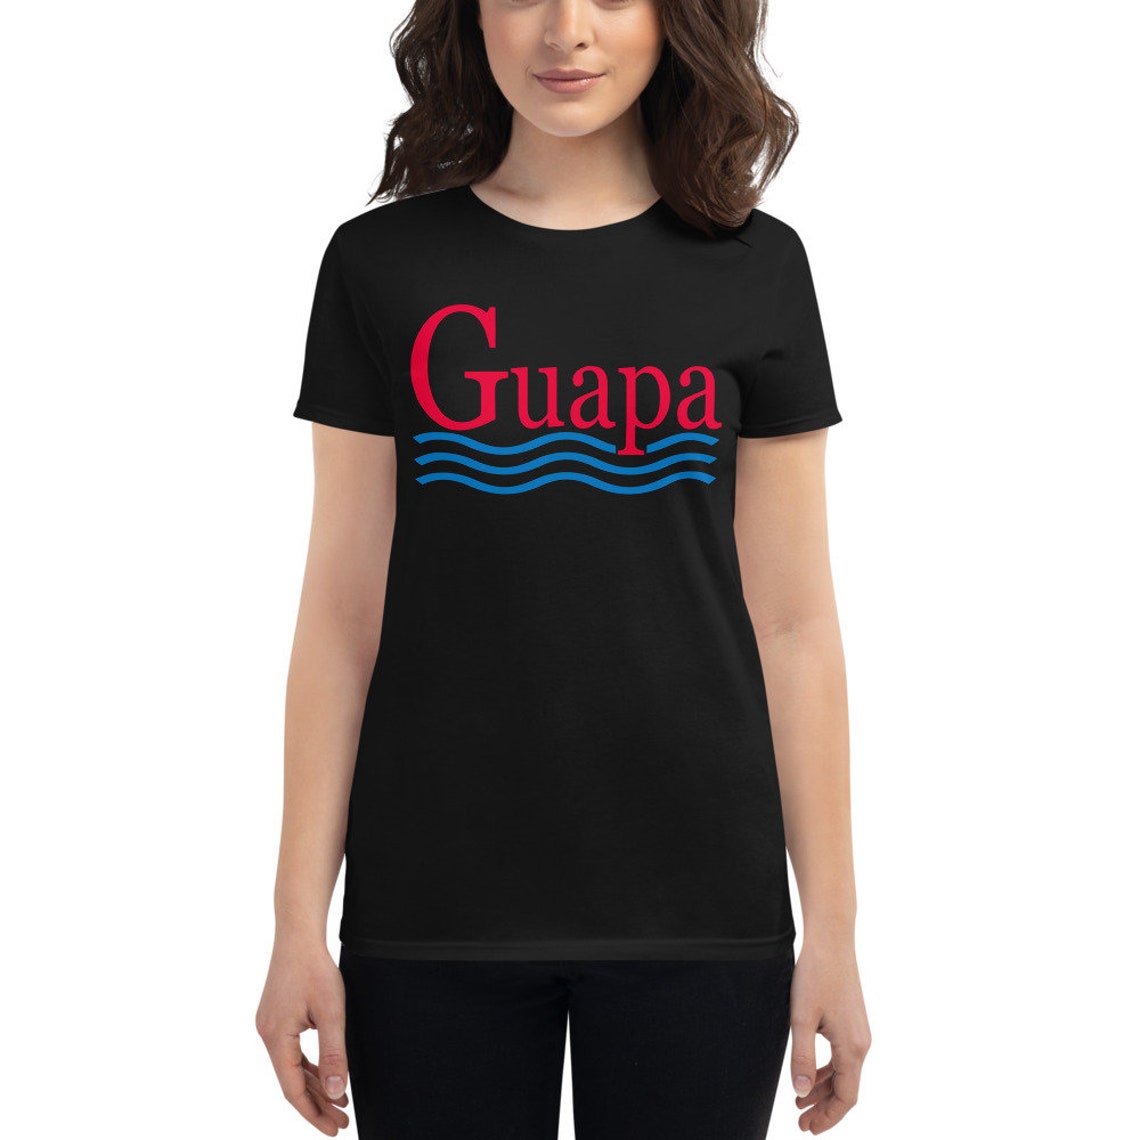 Guapa Shirt Latina Power Spanish Shirt Latina Gifts Como | Etsy